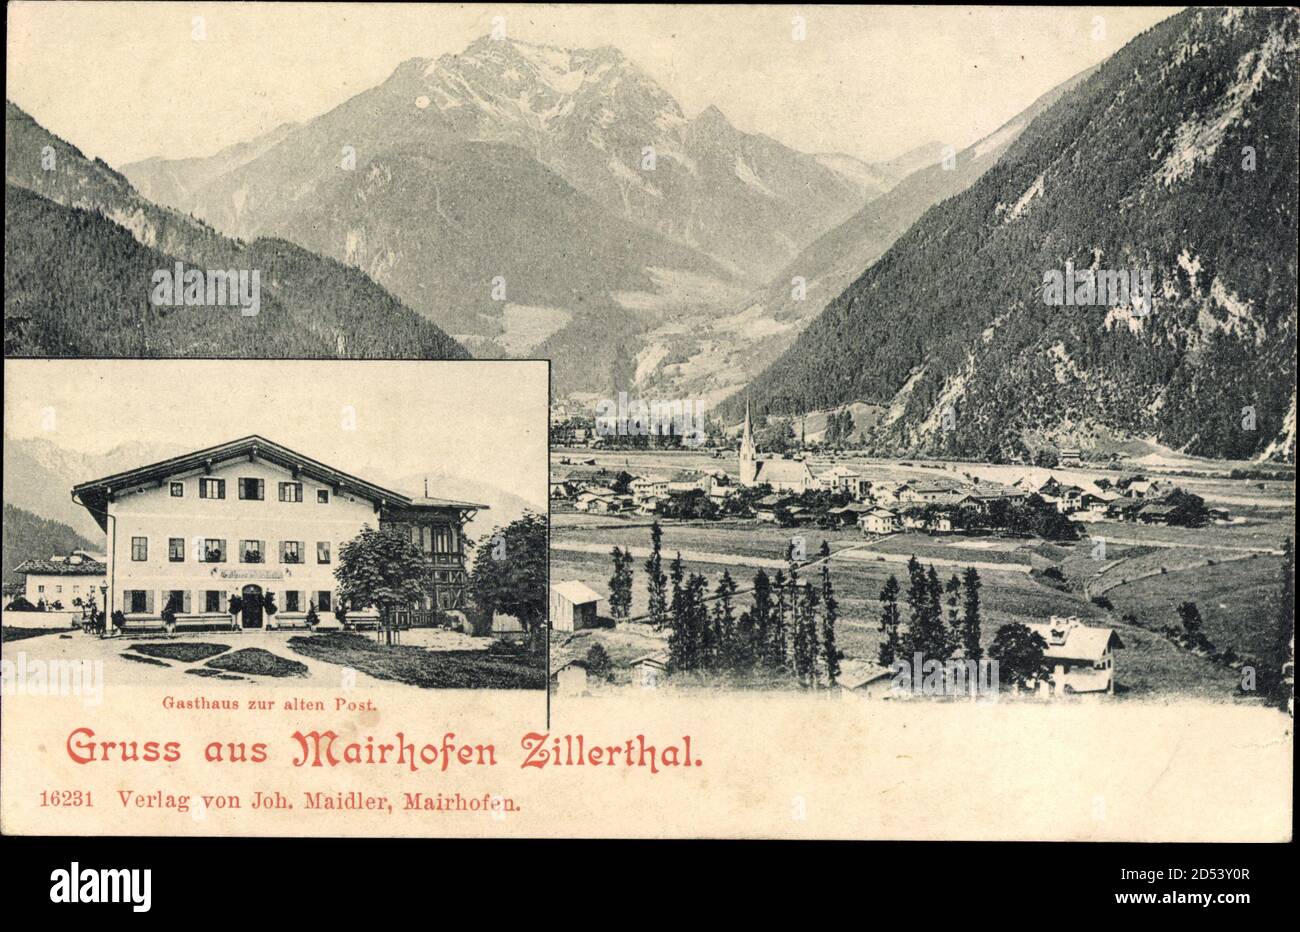 Mayrhofen Zillertal Tirol, Gasthaus zur alten Post | usage worldwide Stock Photo